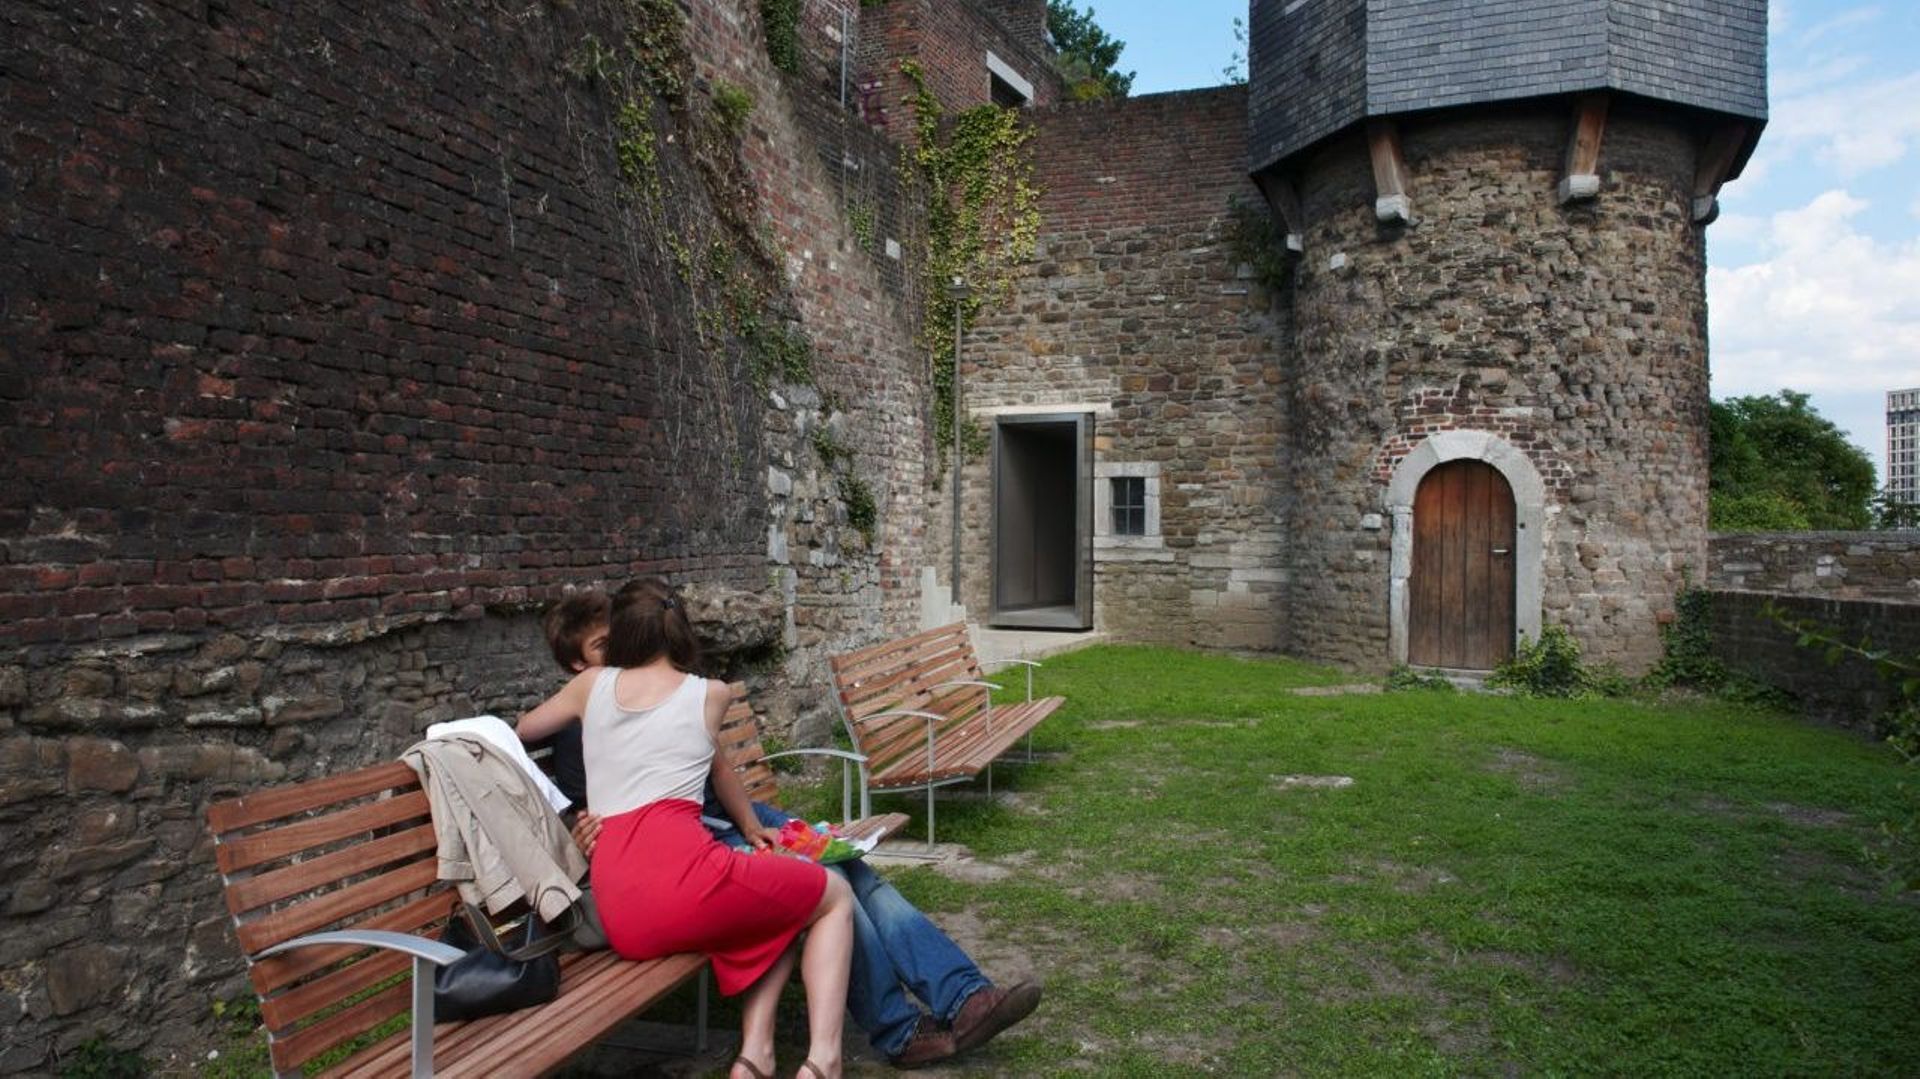 Atelier Alain Richard: Aménagement sur le parcours touristique dans la Tour des Vieux Joncs (Coteau de la Citadelle, Liège)